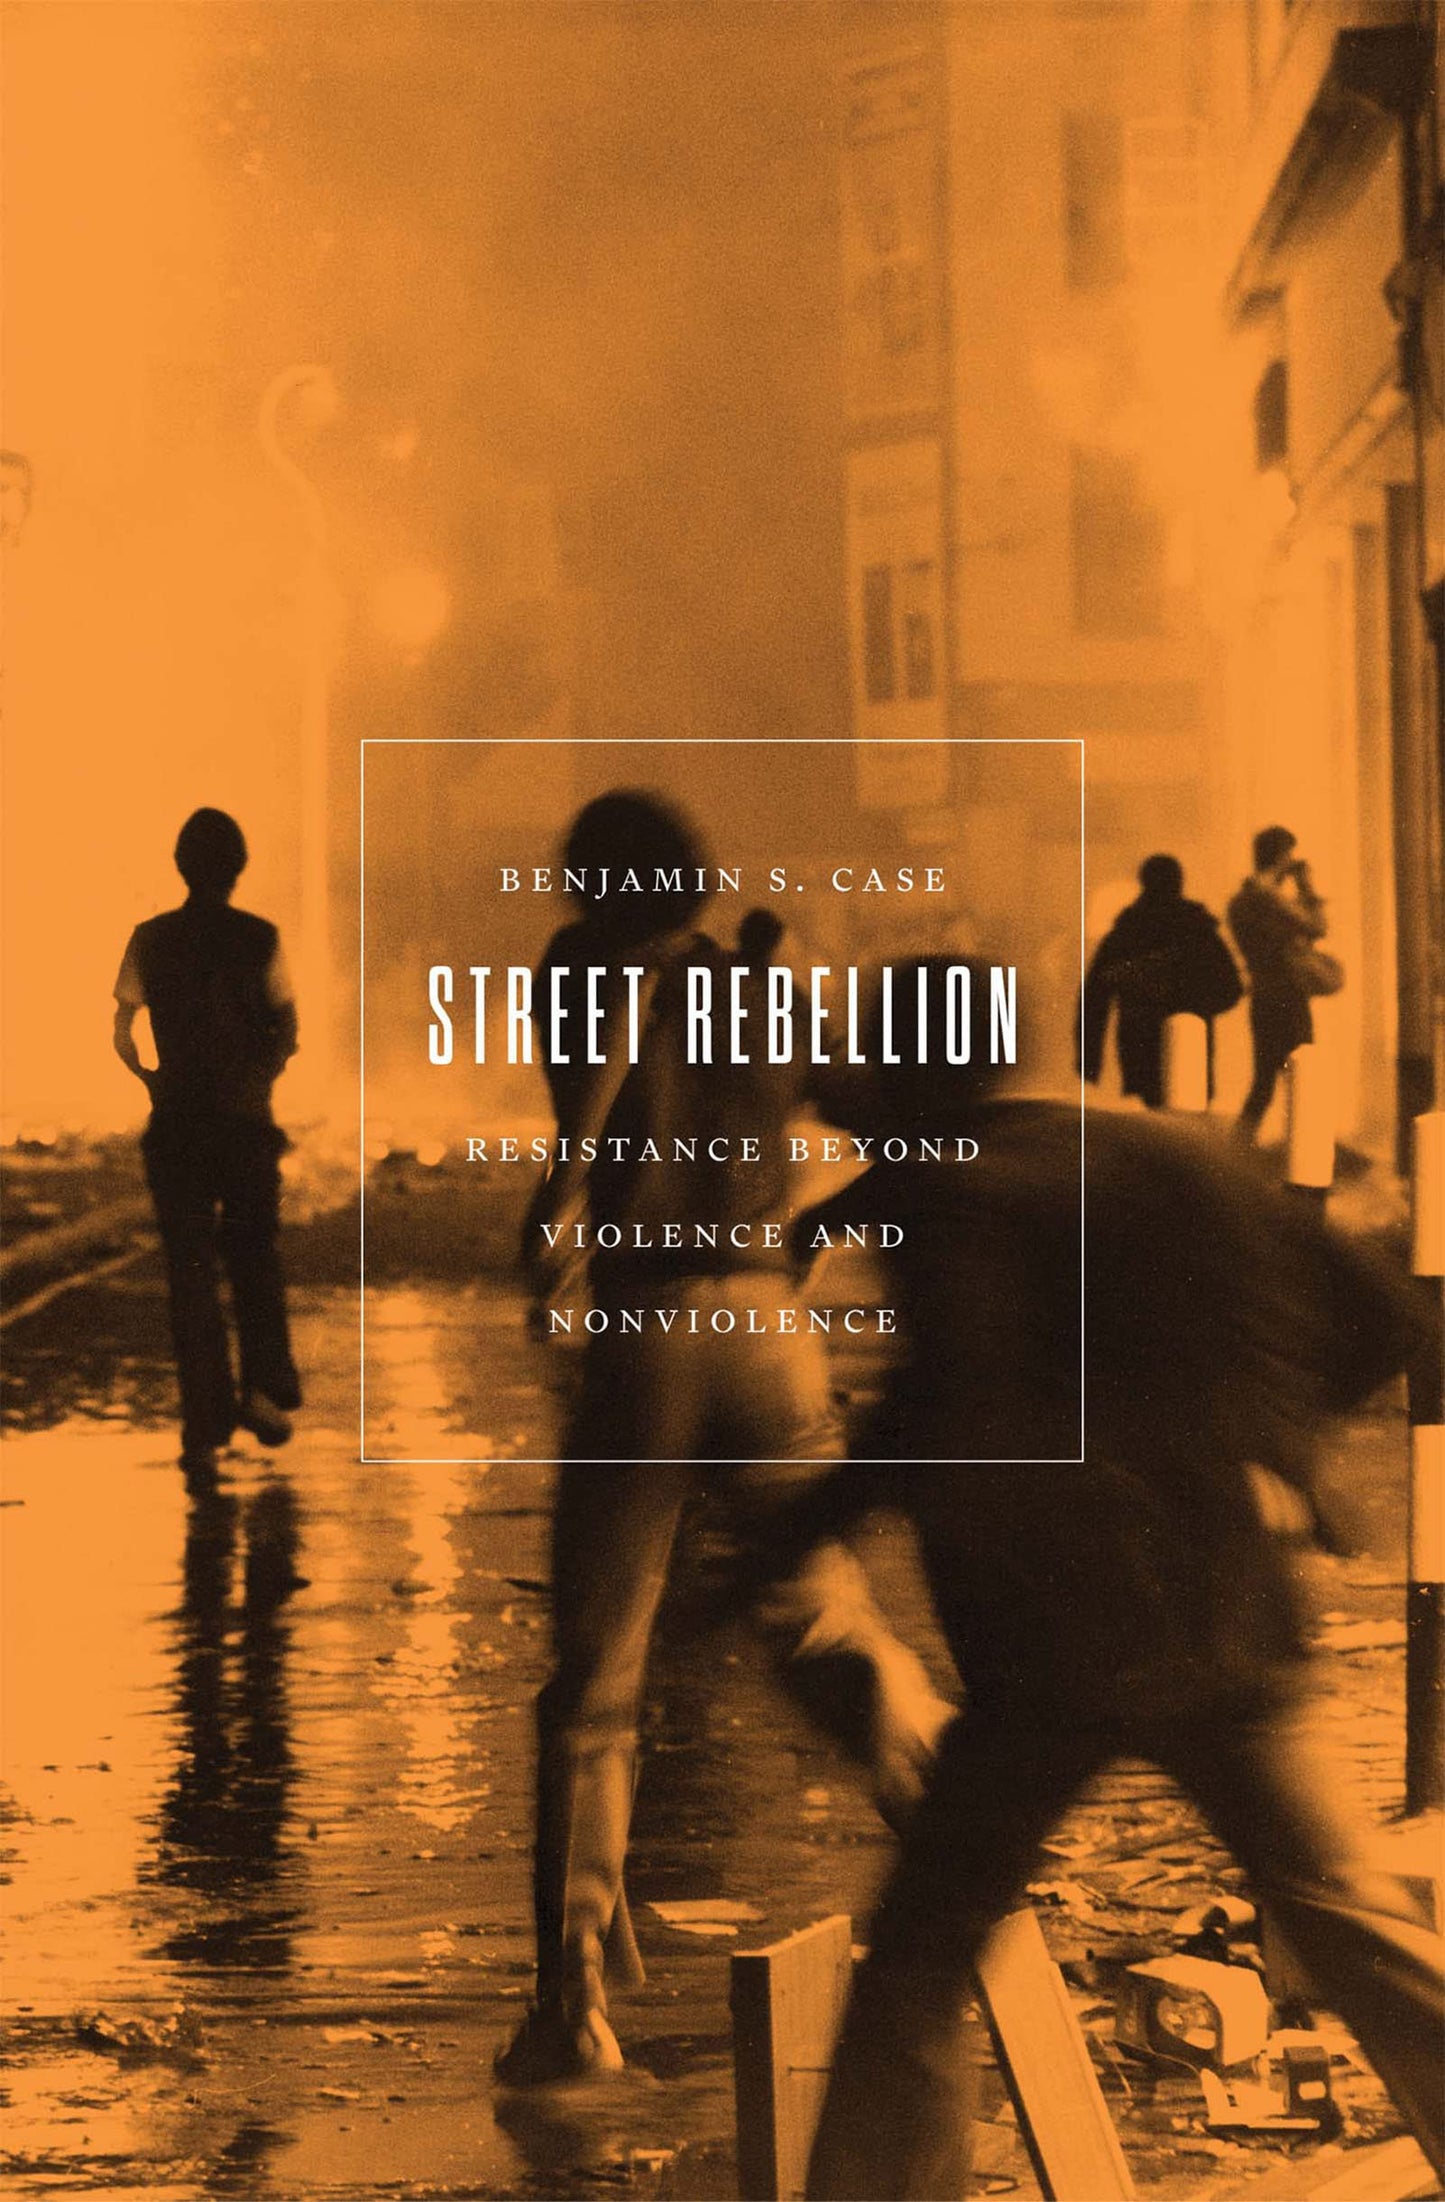 Street Rebellion, by Benjamin S. Case